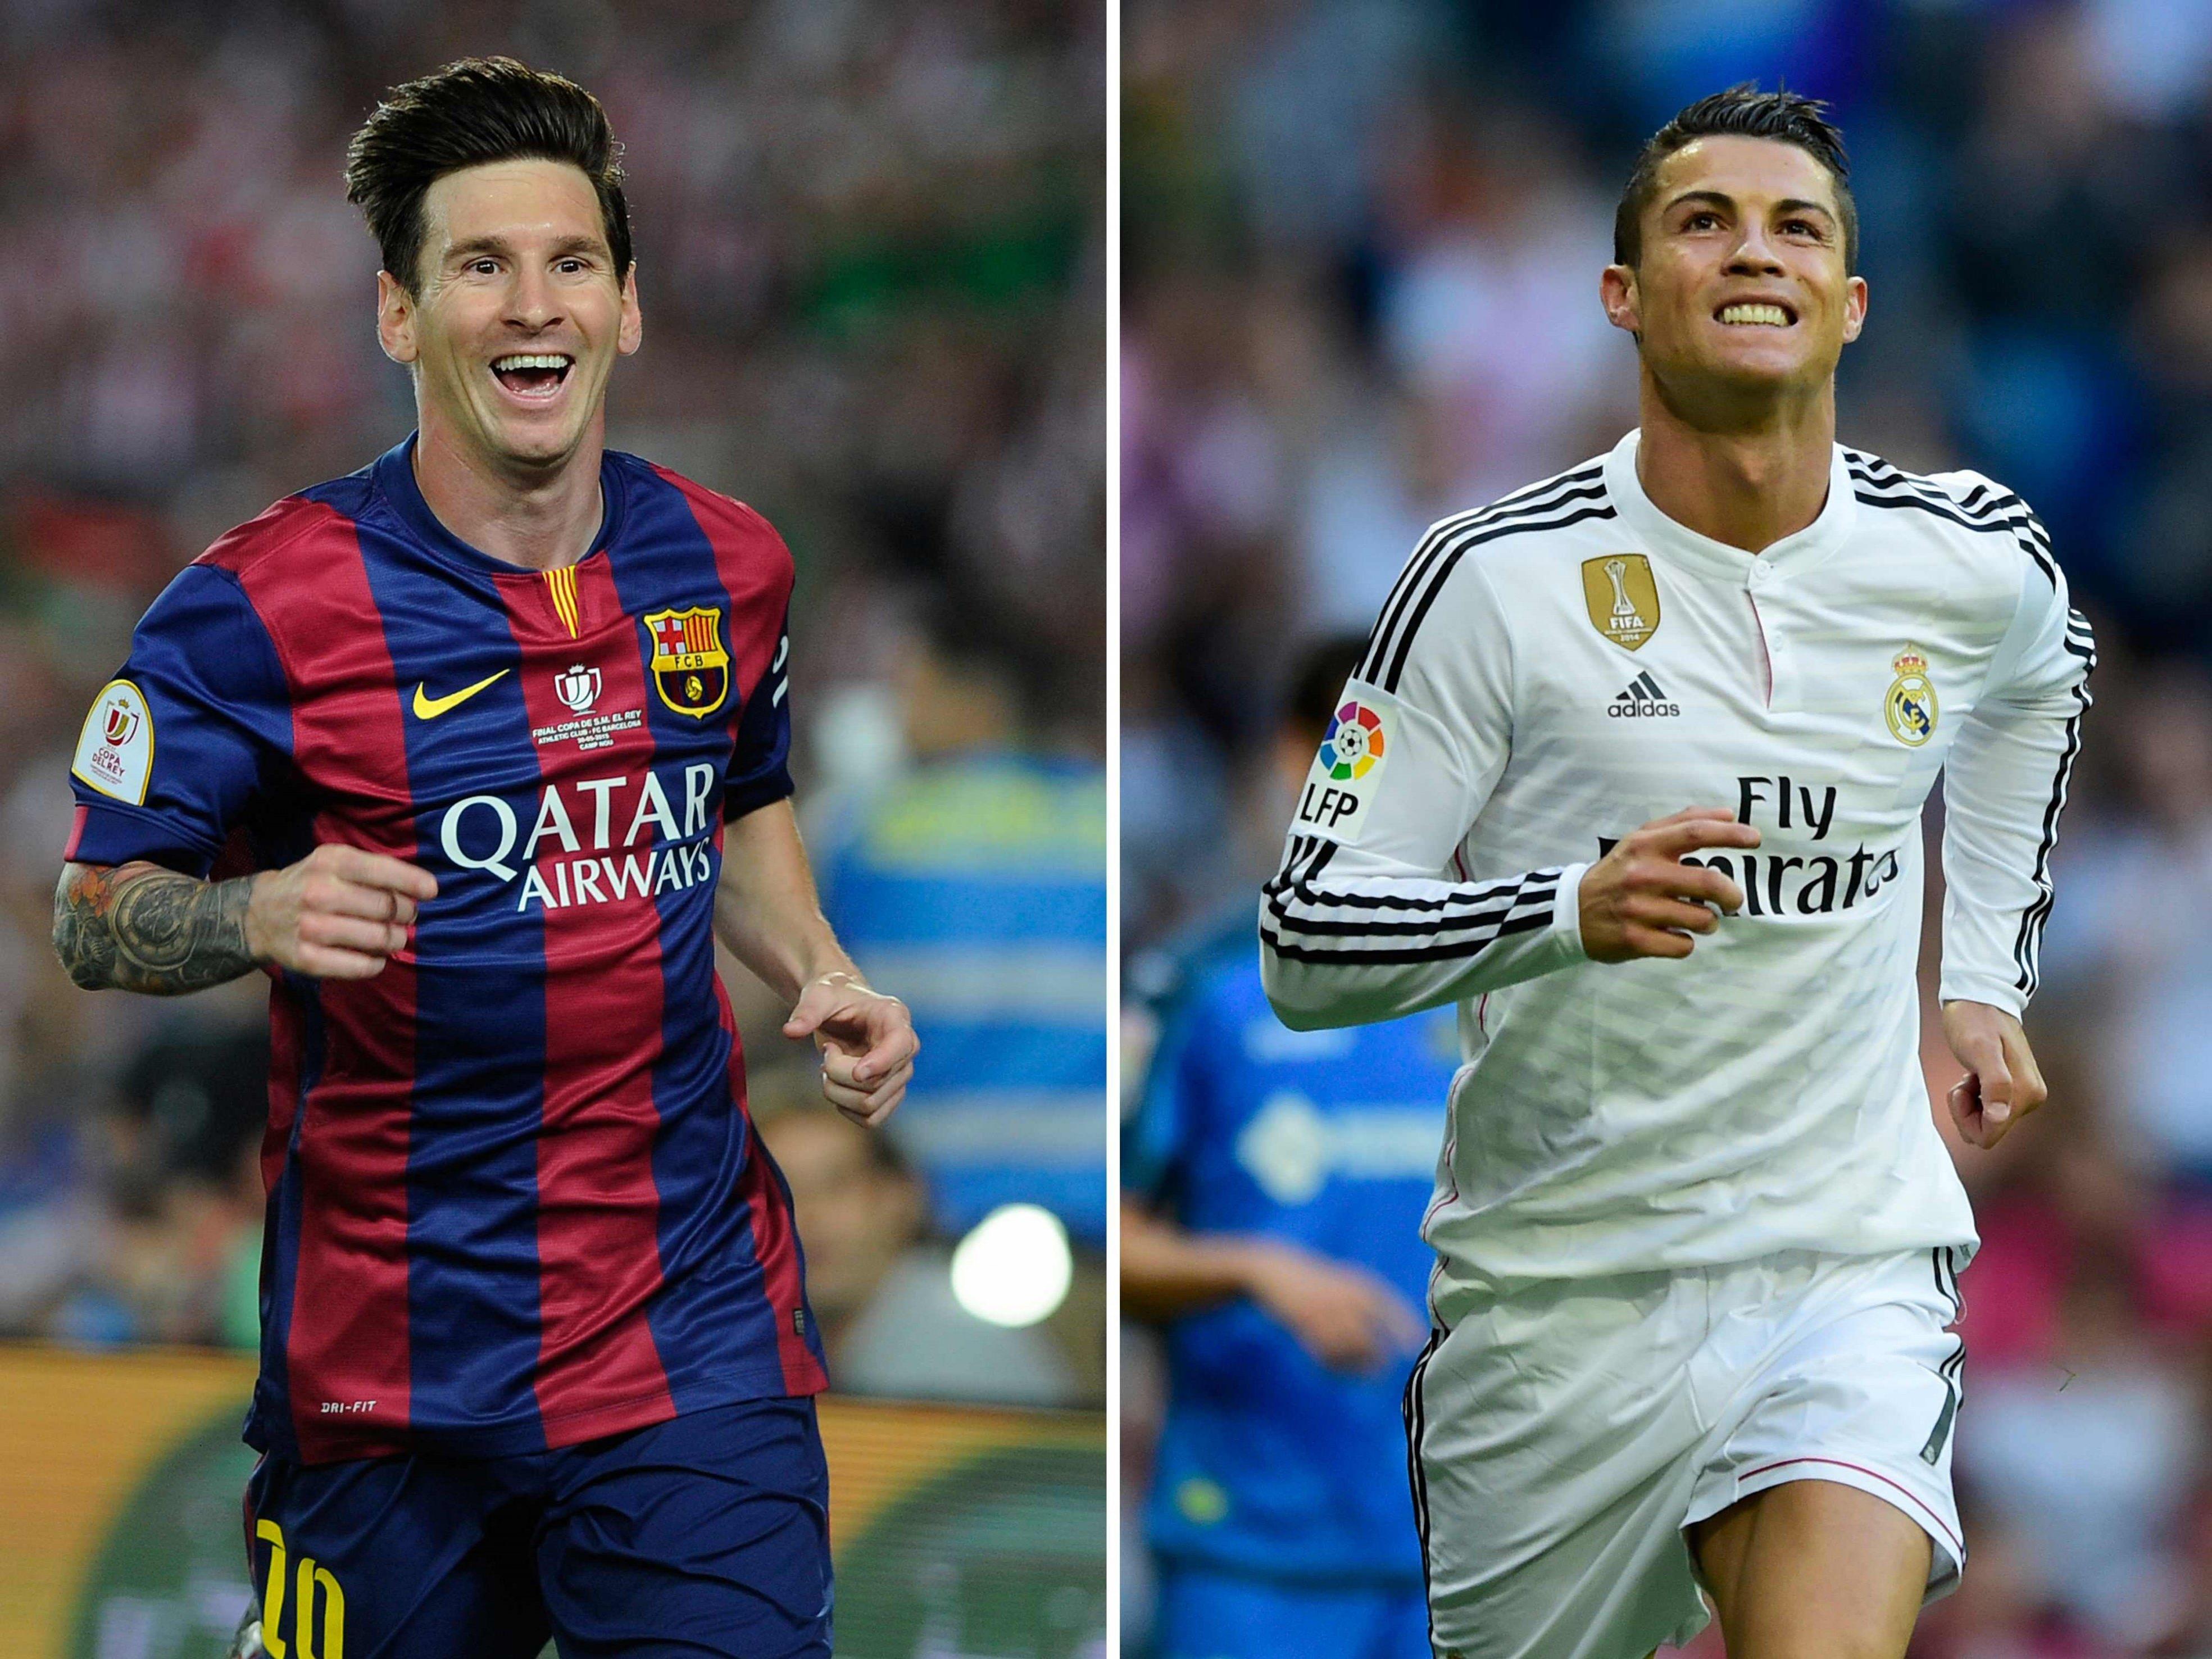 Wer verdient mehr - Messi oder Ronaldo?